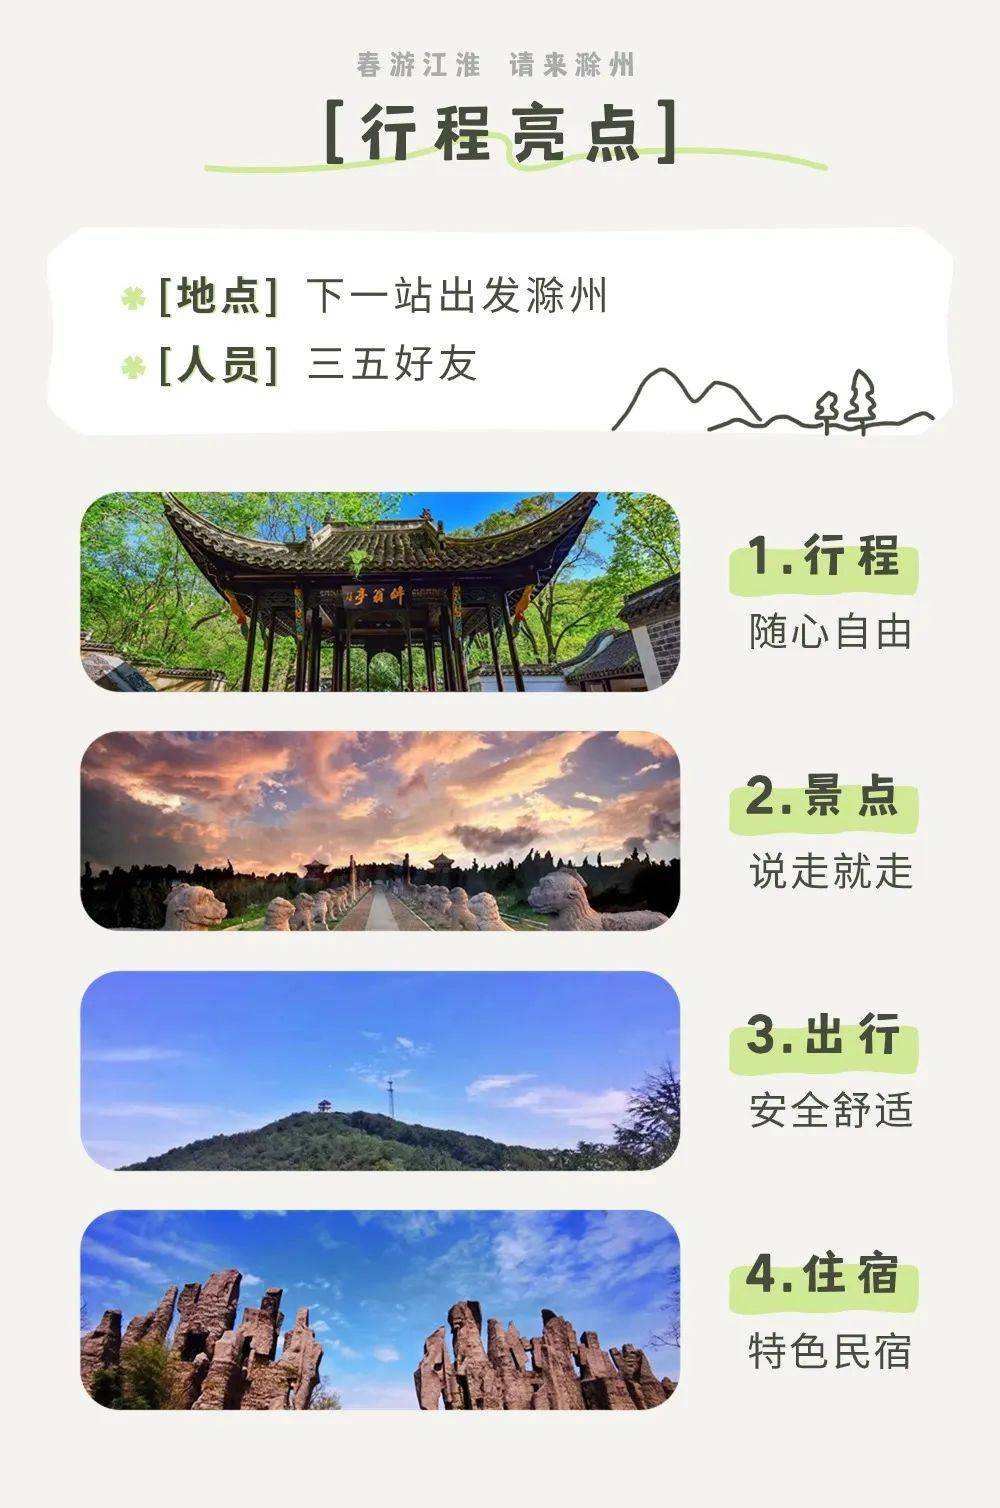 壶镇琅琊谷景区门票图片